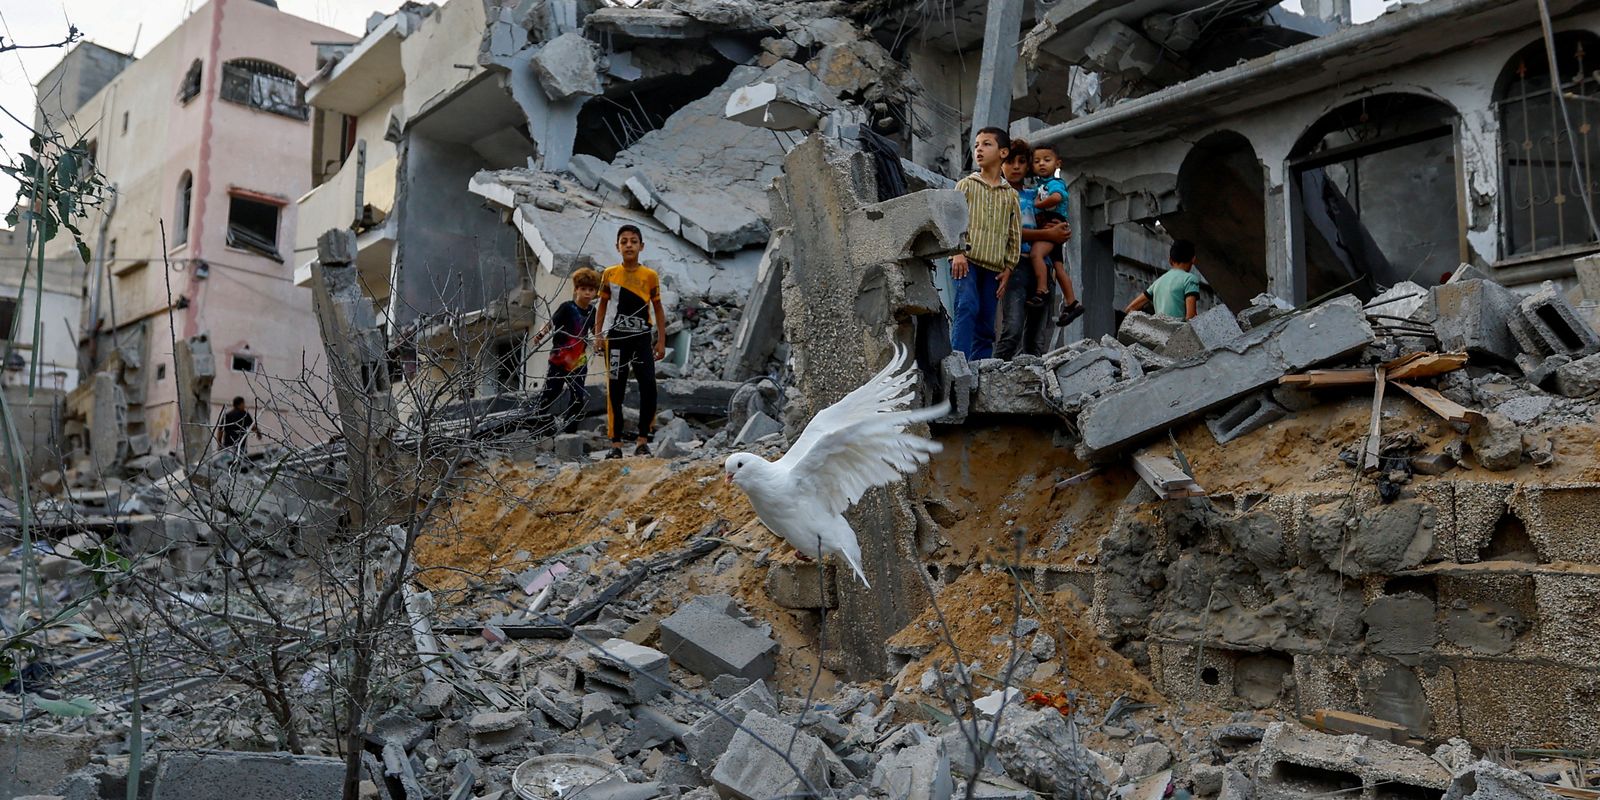 taxa-de-pobreza-na-palestina-aumentou-20%-apos-bombardeios